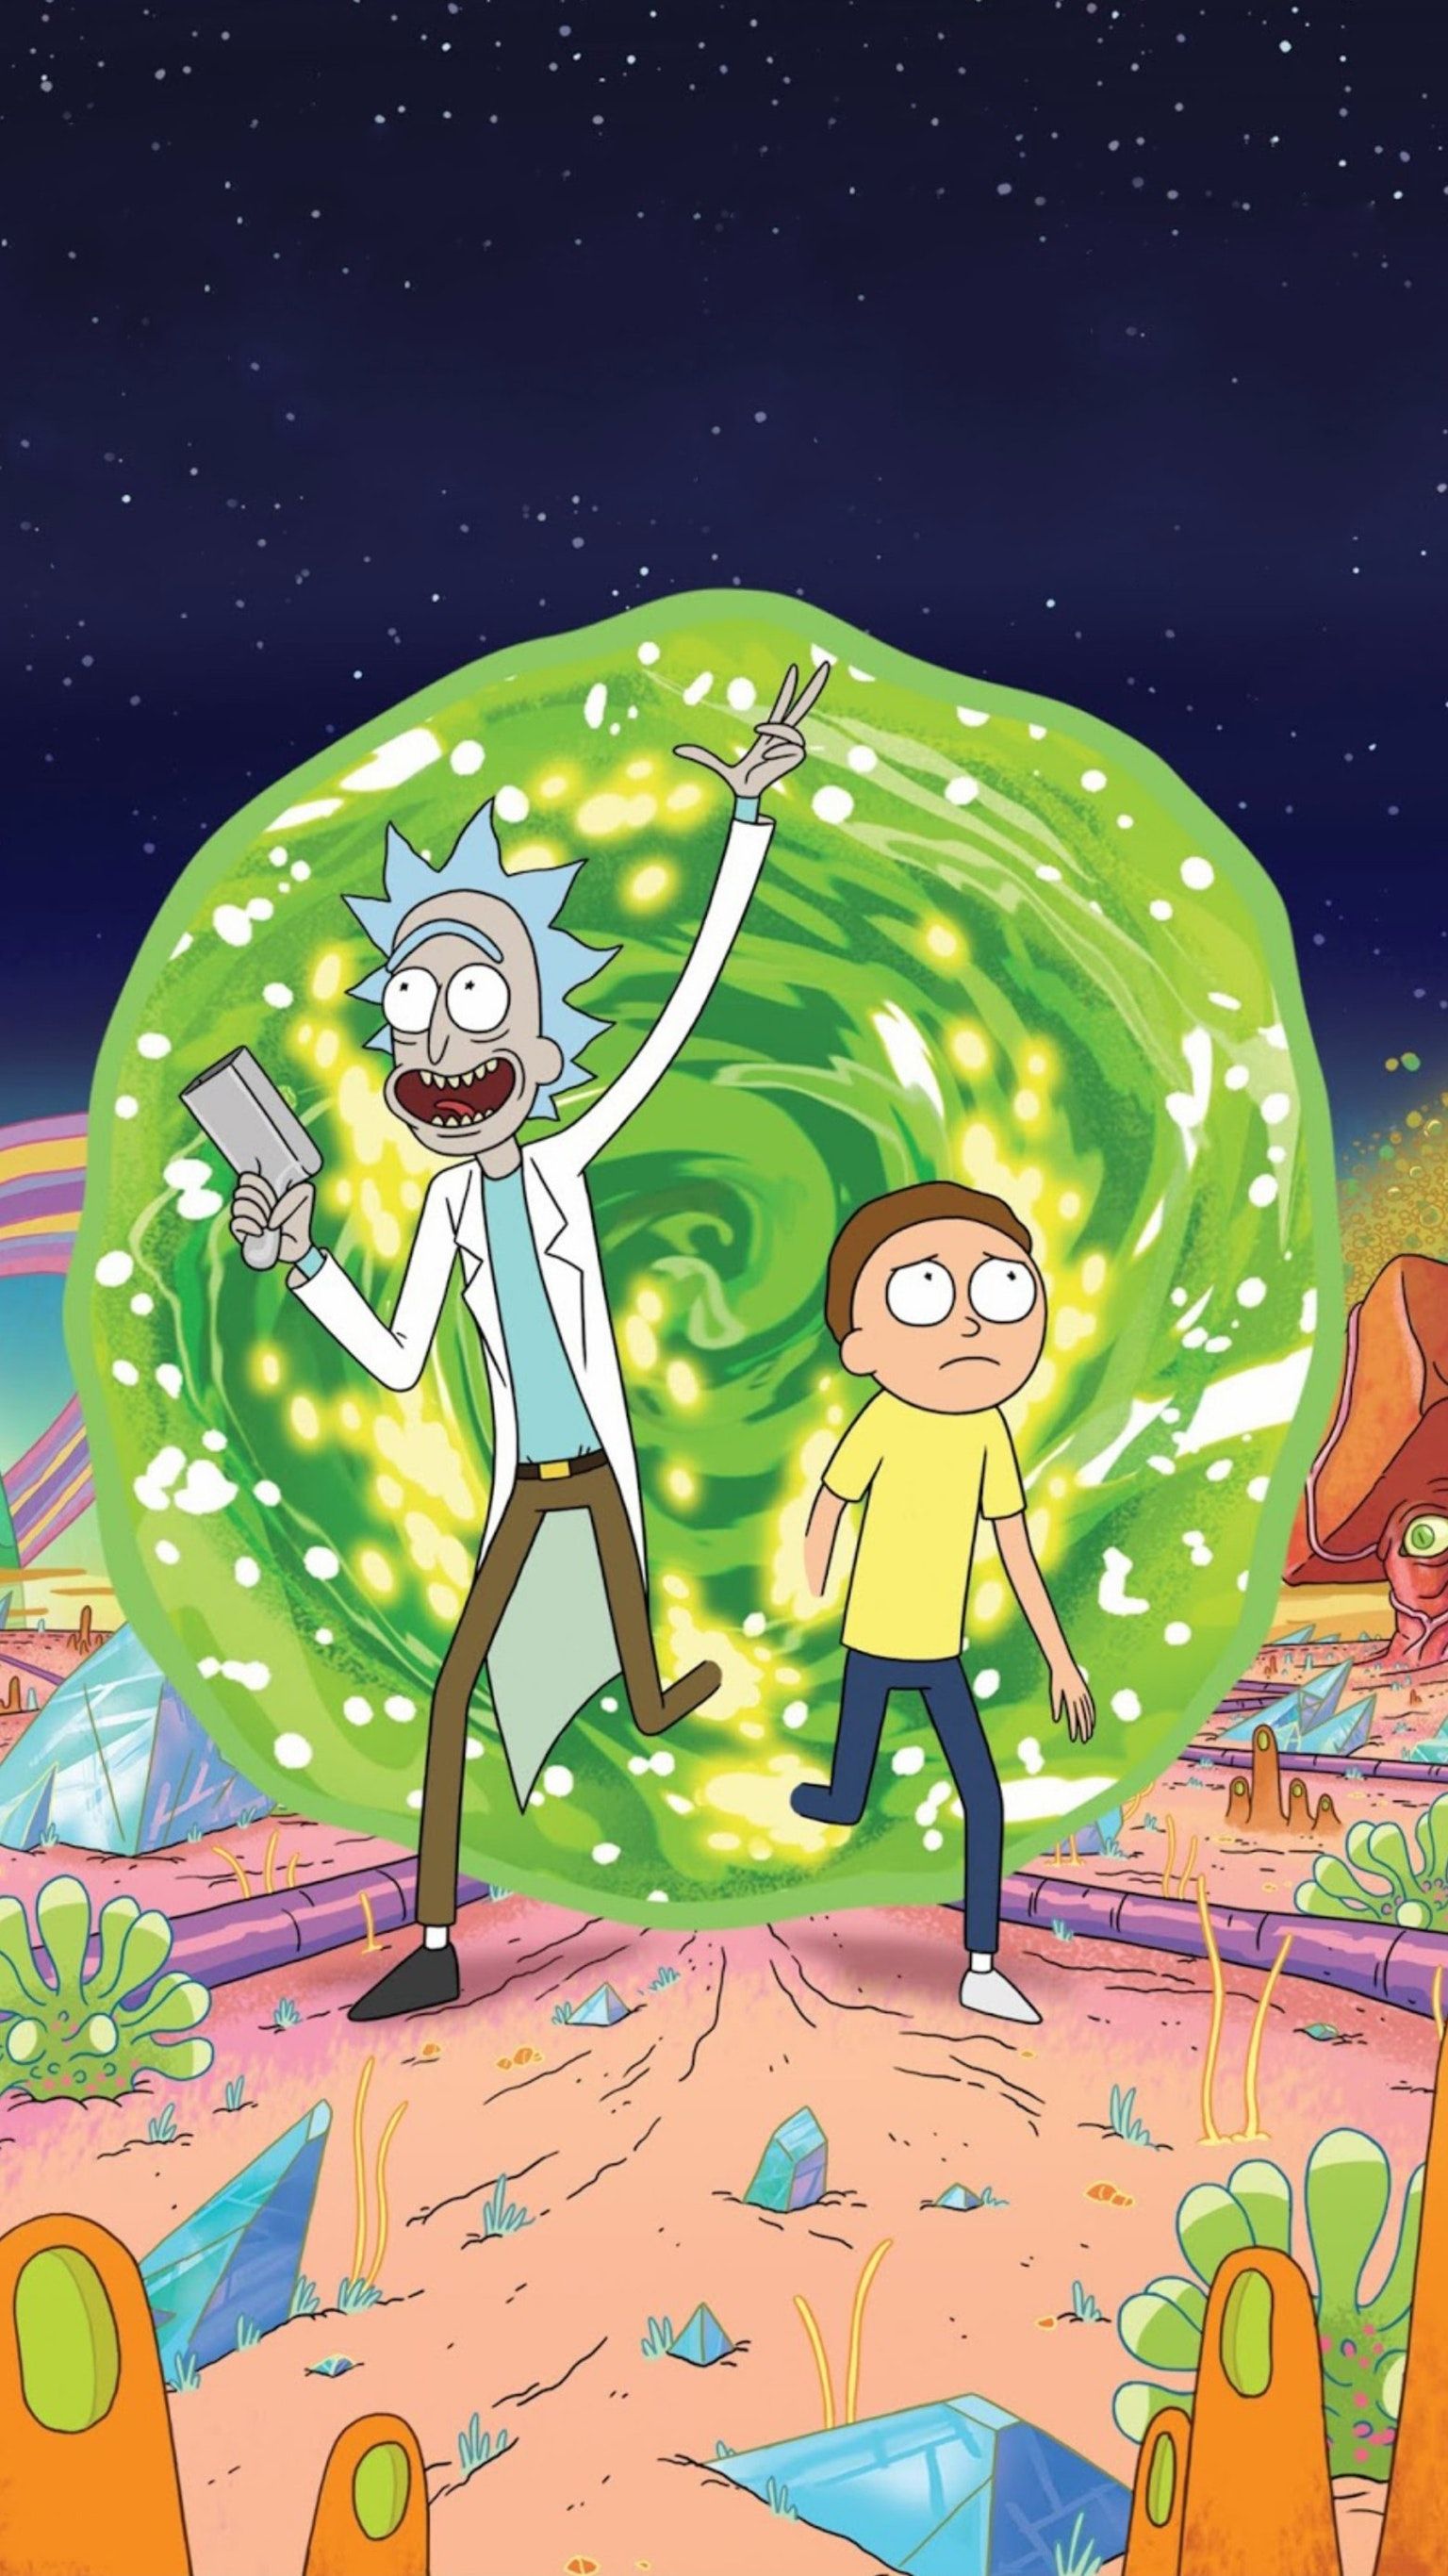 ریک و مورتی (Rick and Morty)